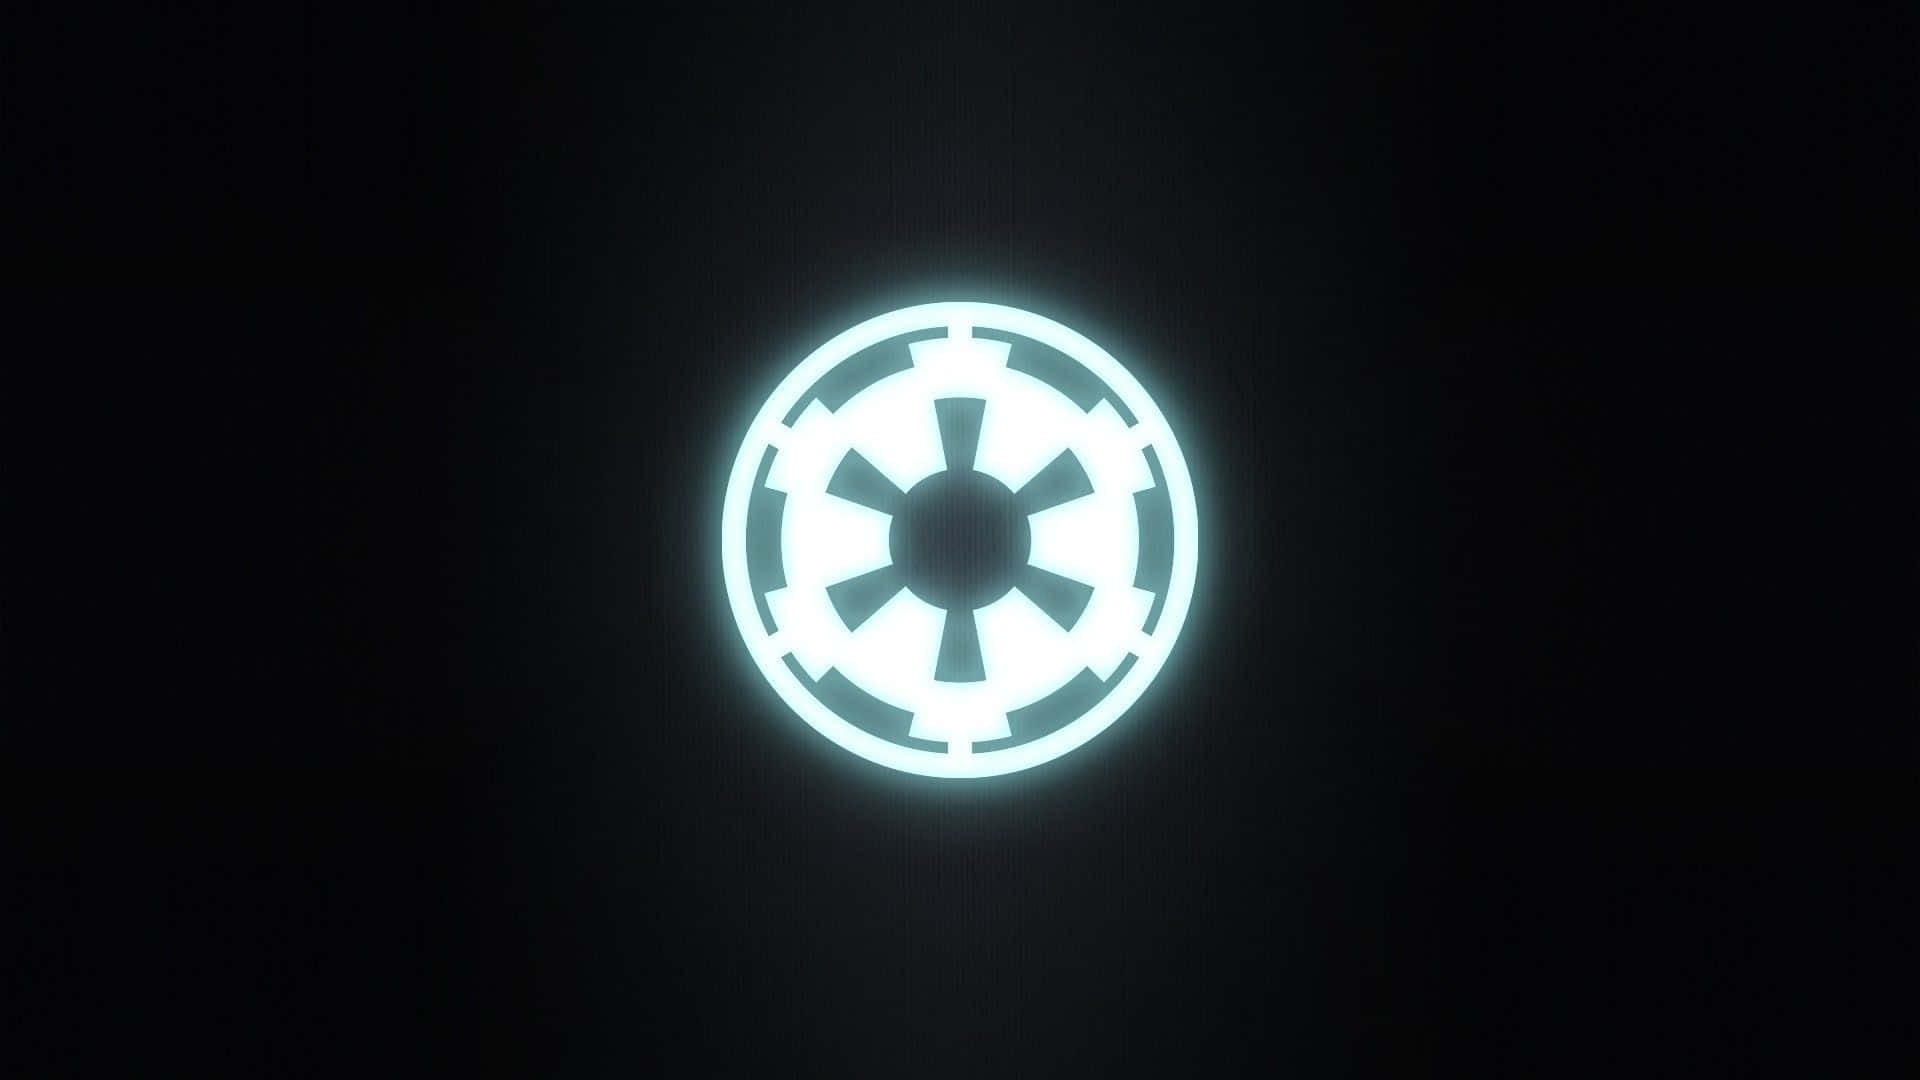 Dasikonische Star Wars Imperium-logo Wallpaper